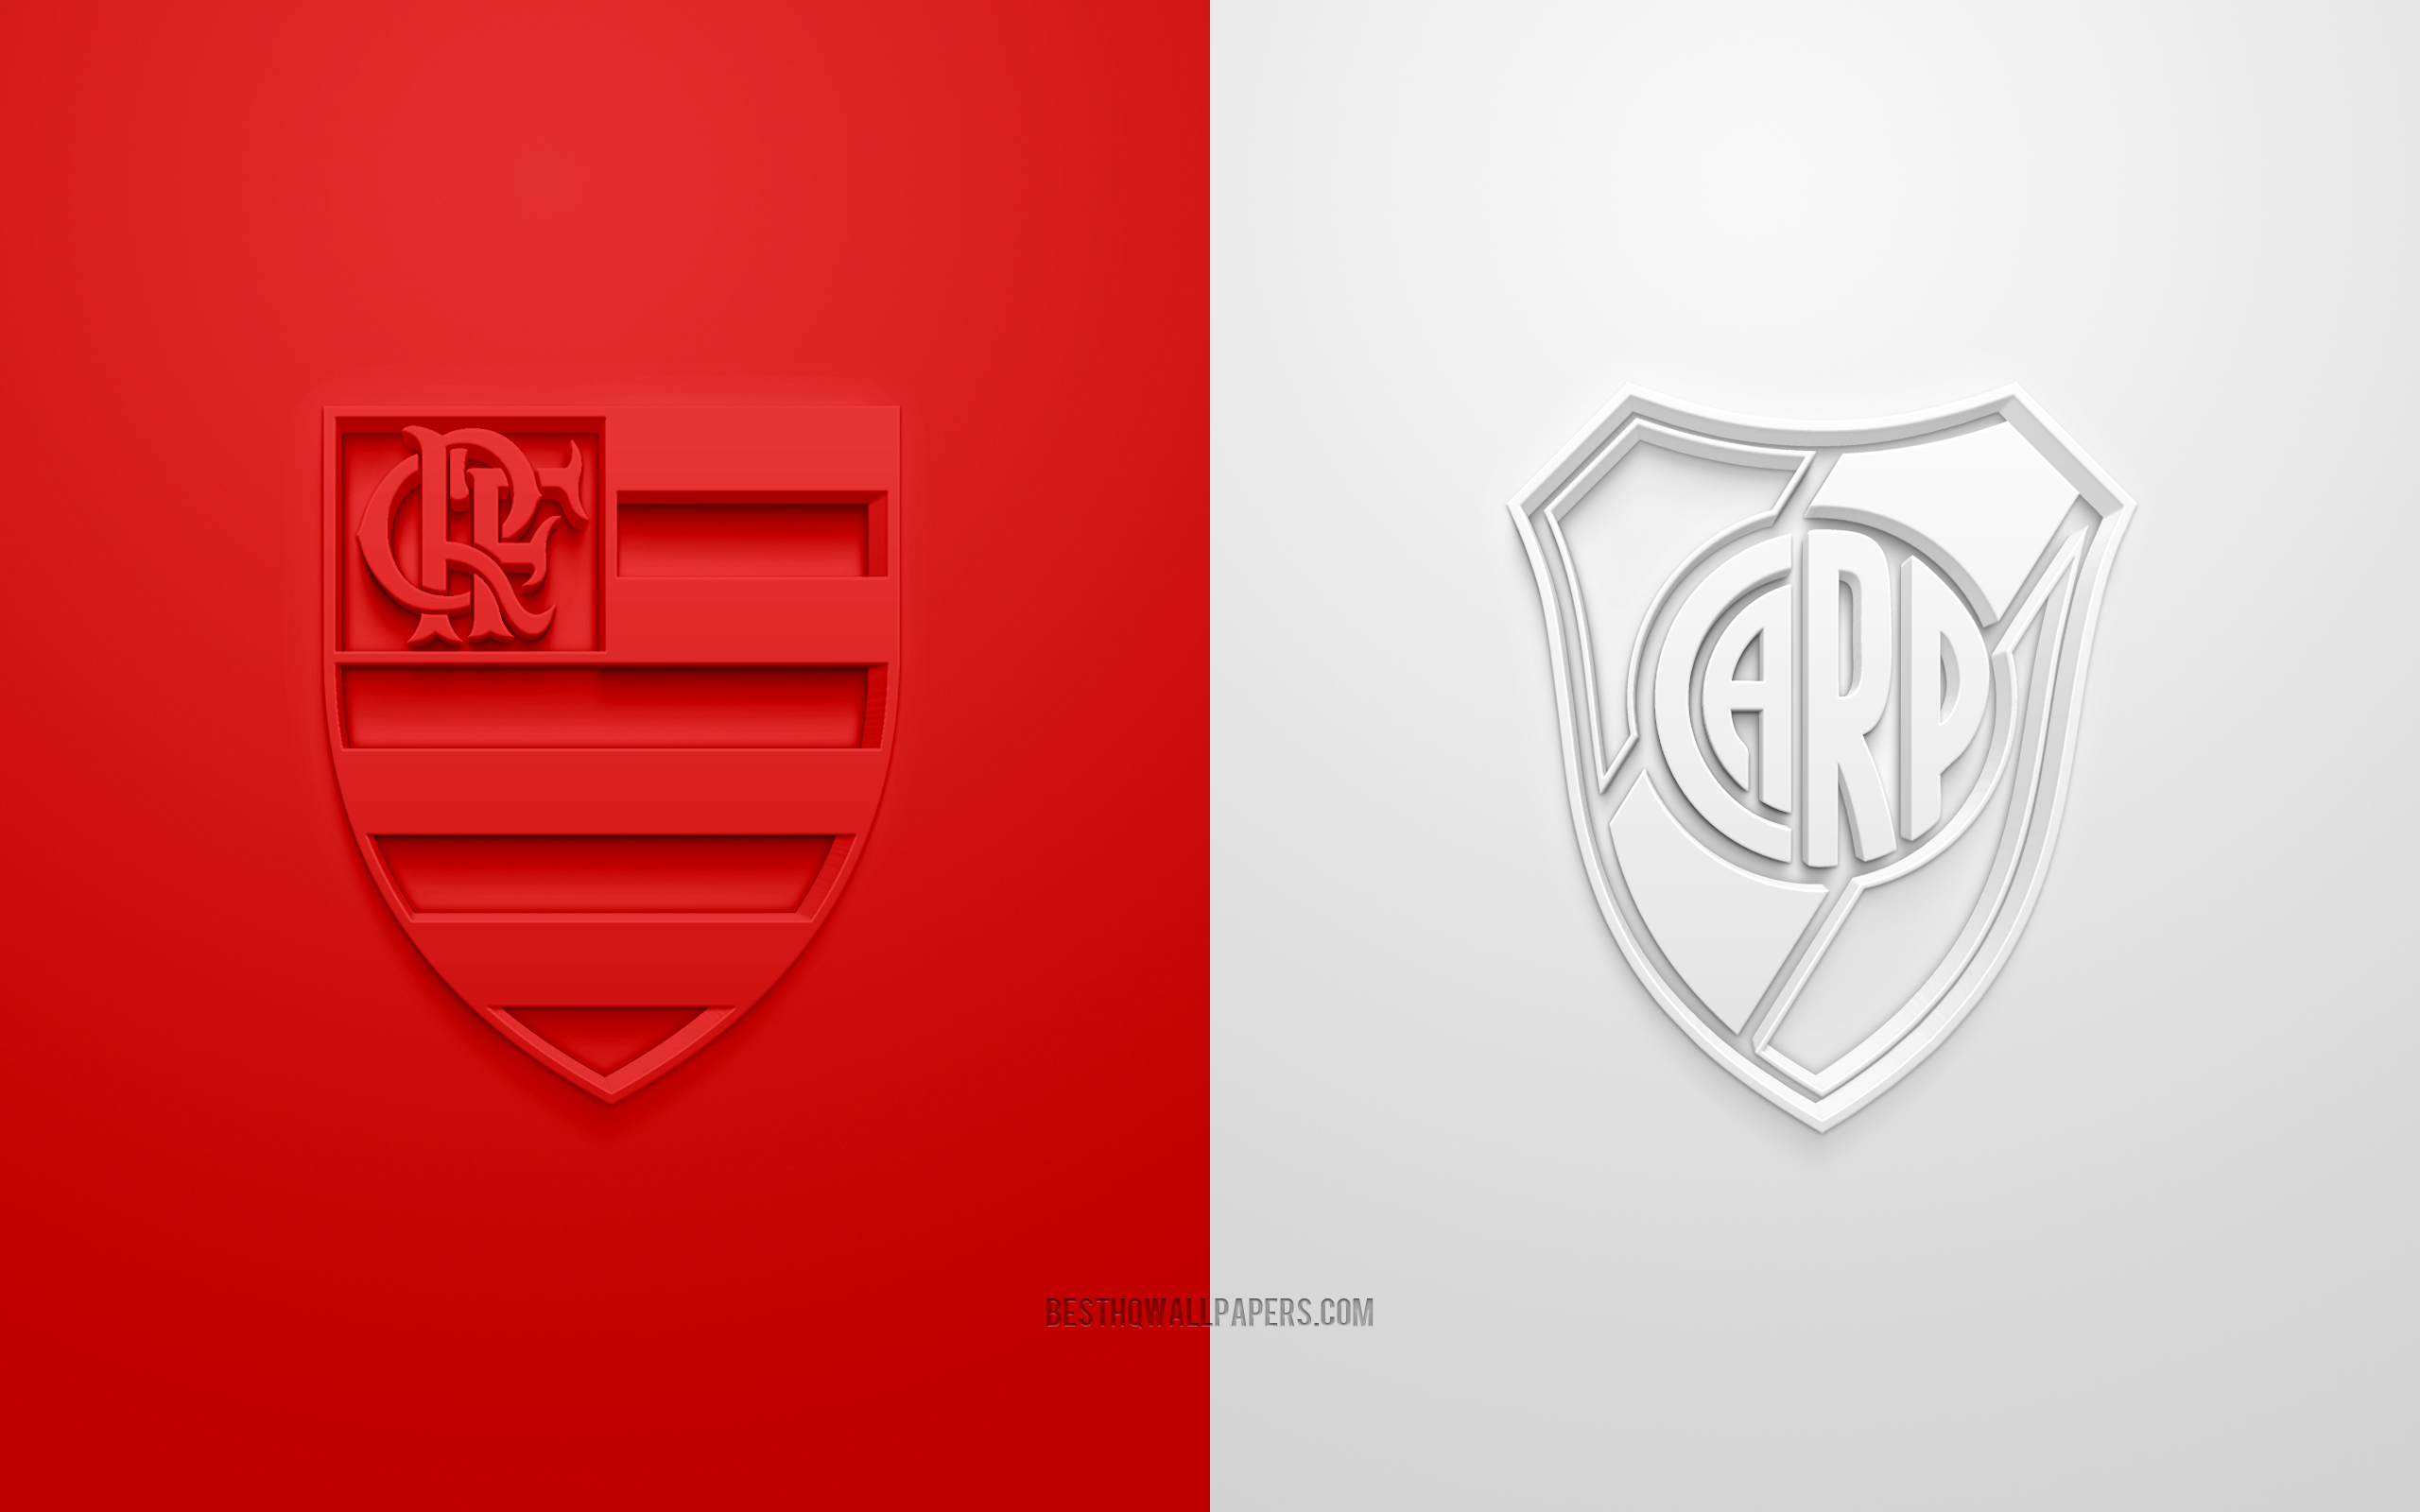 Flamengo Vs River Plate, 2019 Copa Libertadores, 3d - Arsenal Vs Vitoria De Guimaraes - HD Wallpaper 